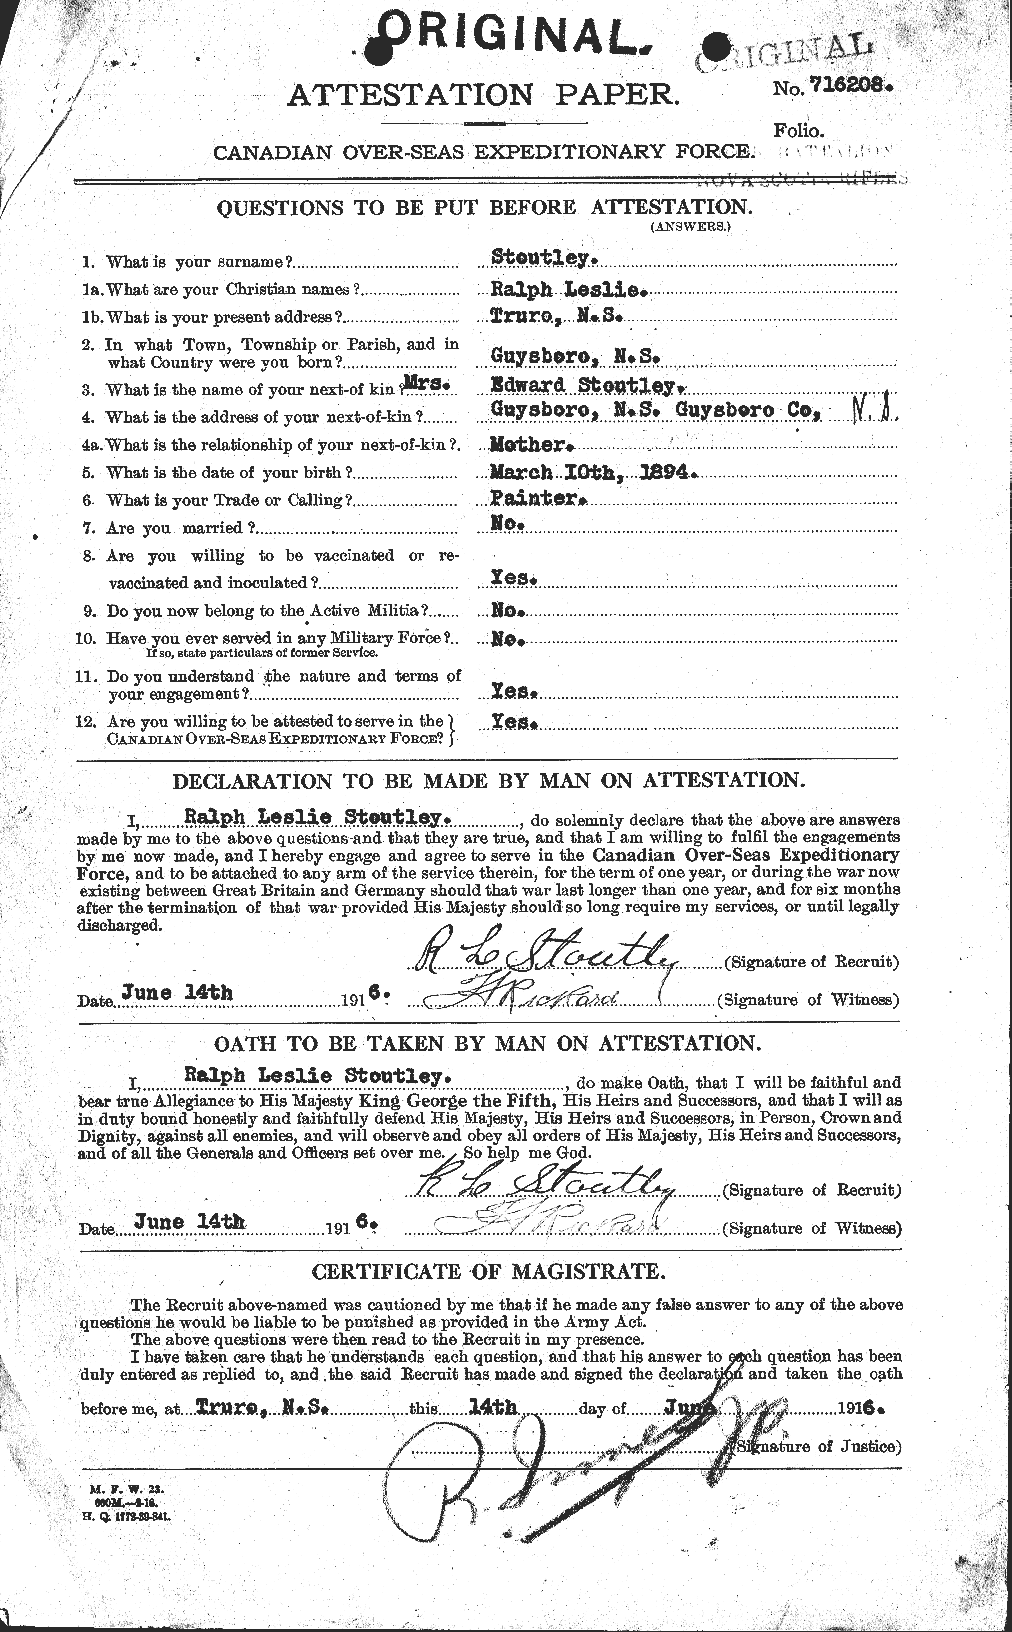 Dossiers du Personnel de la Première Guerre mondiale - CEC 122454a